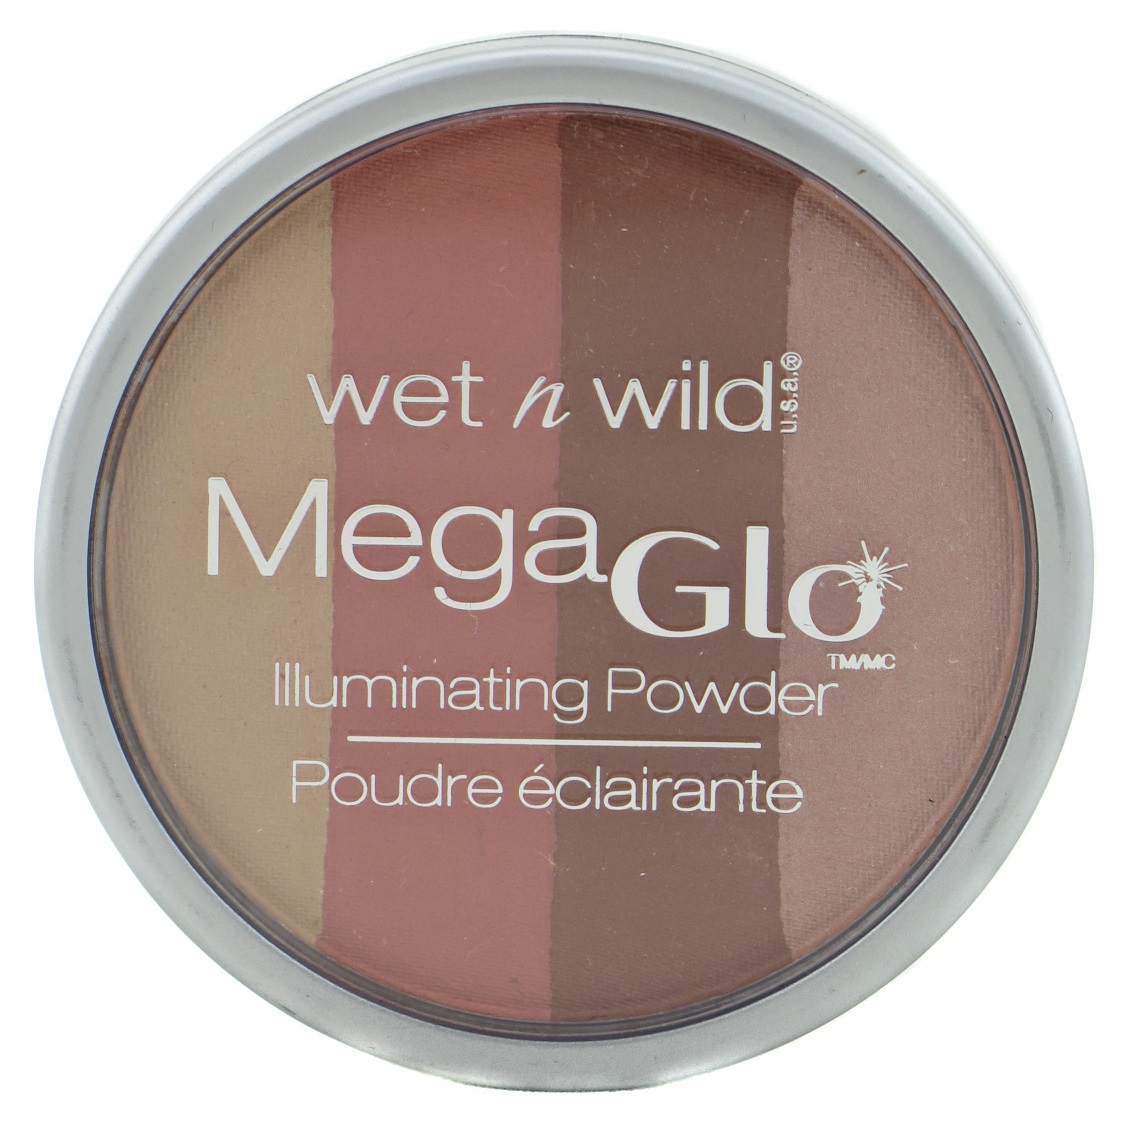 Wet N Wild Mega Glo Illuminating Powder - Assorted